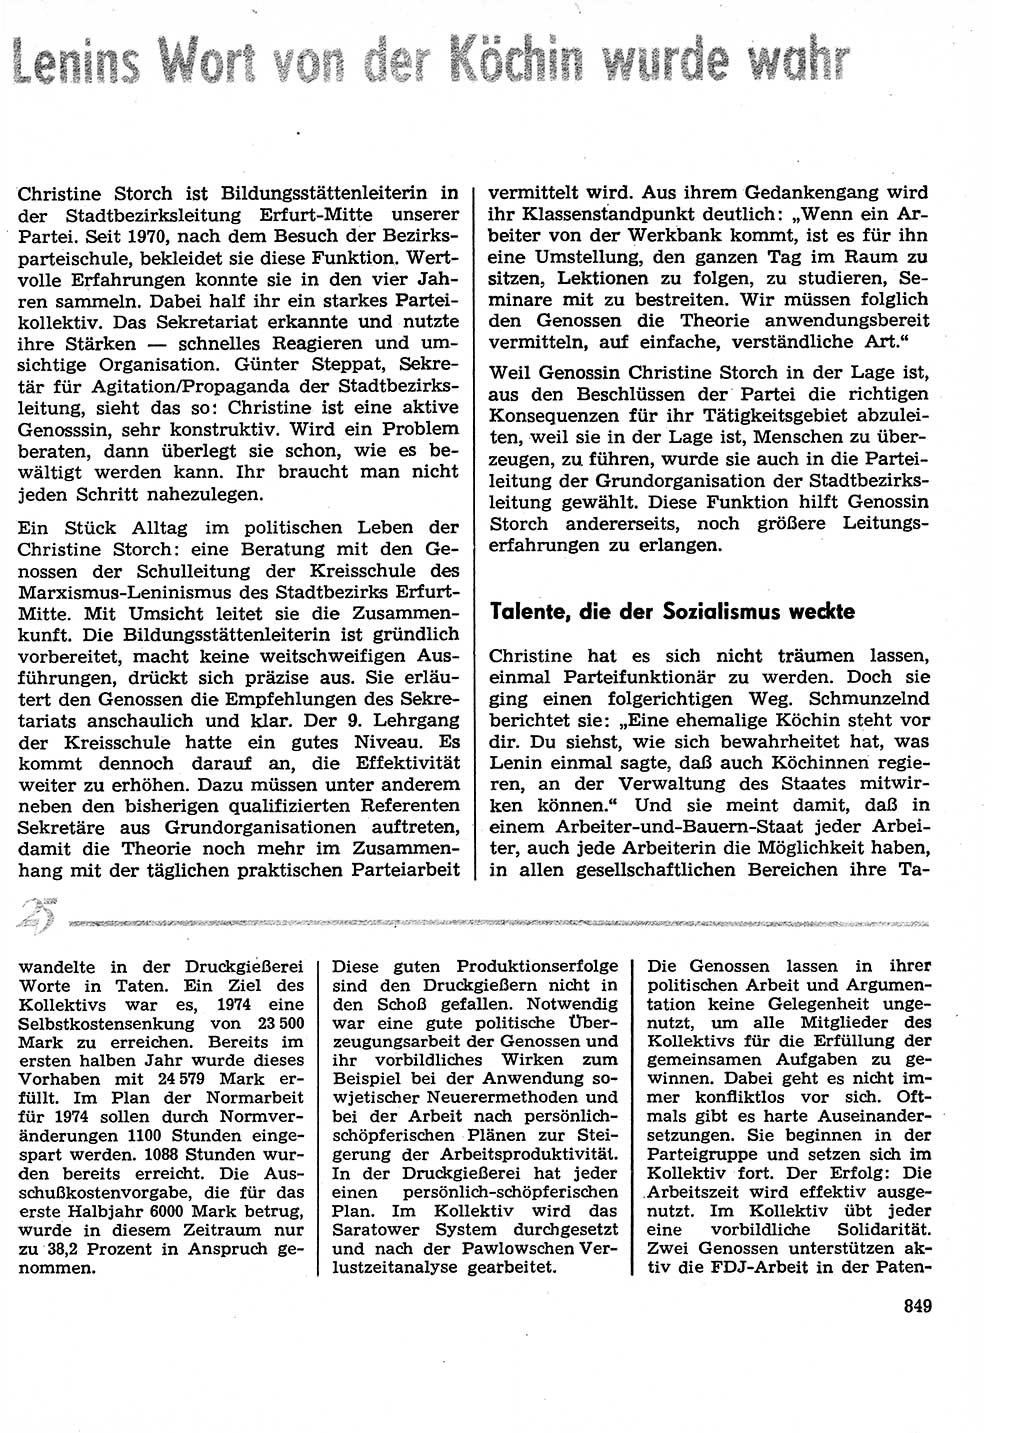 Neuer Weg (NW), Organ des Zentralkomitees (ZK) der SED (Sozialistische Einheitspartei Deutschlands) für Fragen des Parteilebens, 29. Jahrgang [Deutsche Demokratische Republik (DDR)] 1974, Seite 849 (NW ZK SED DDR 1974, S. 849)